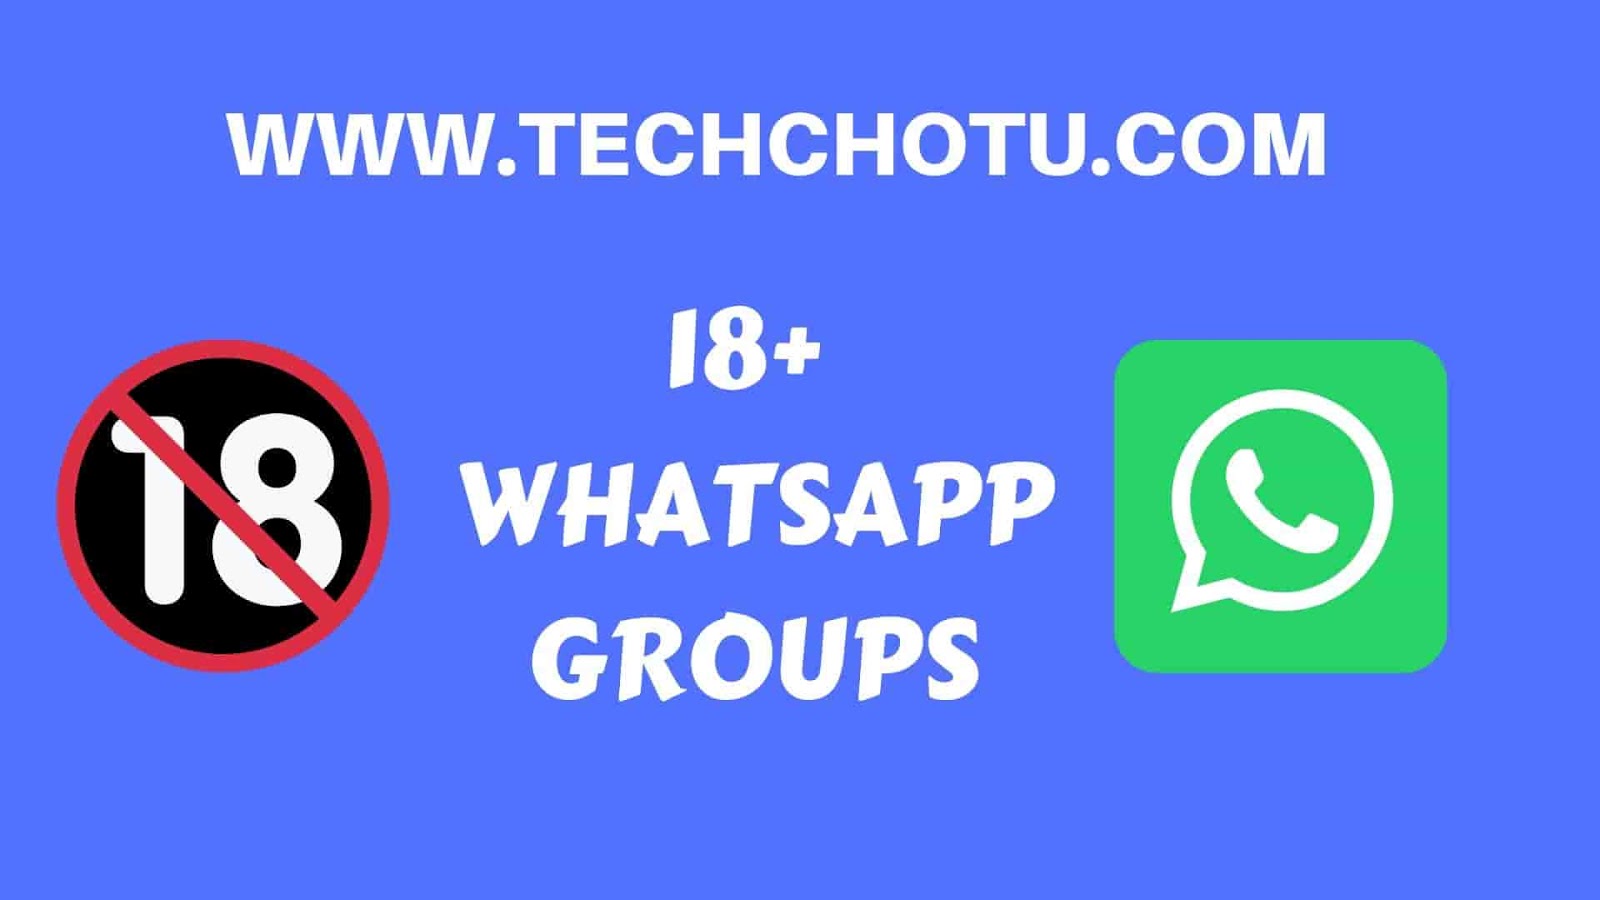 18+ WHATSAPP GROUP LINKS - TECHCHOTU:WhatsApp Group Links 2020 ...